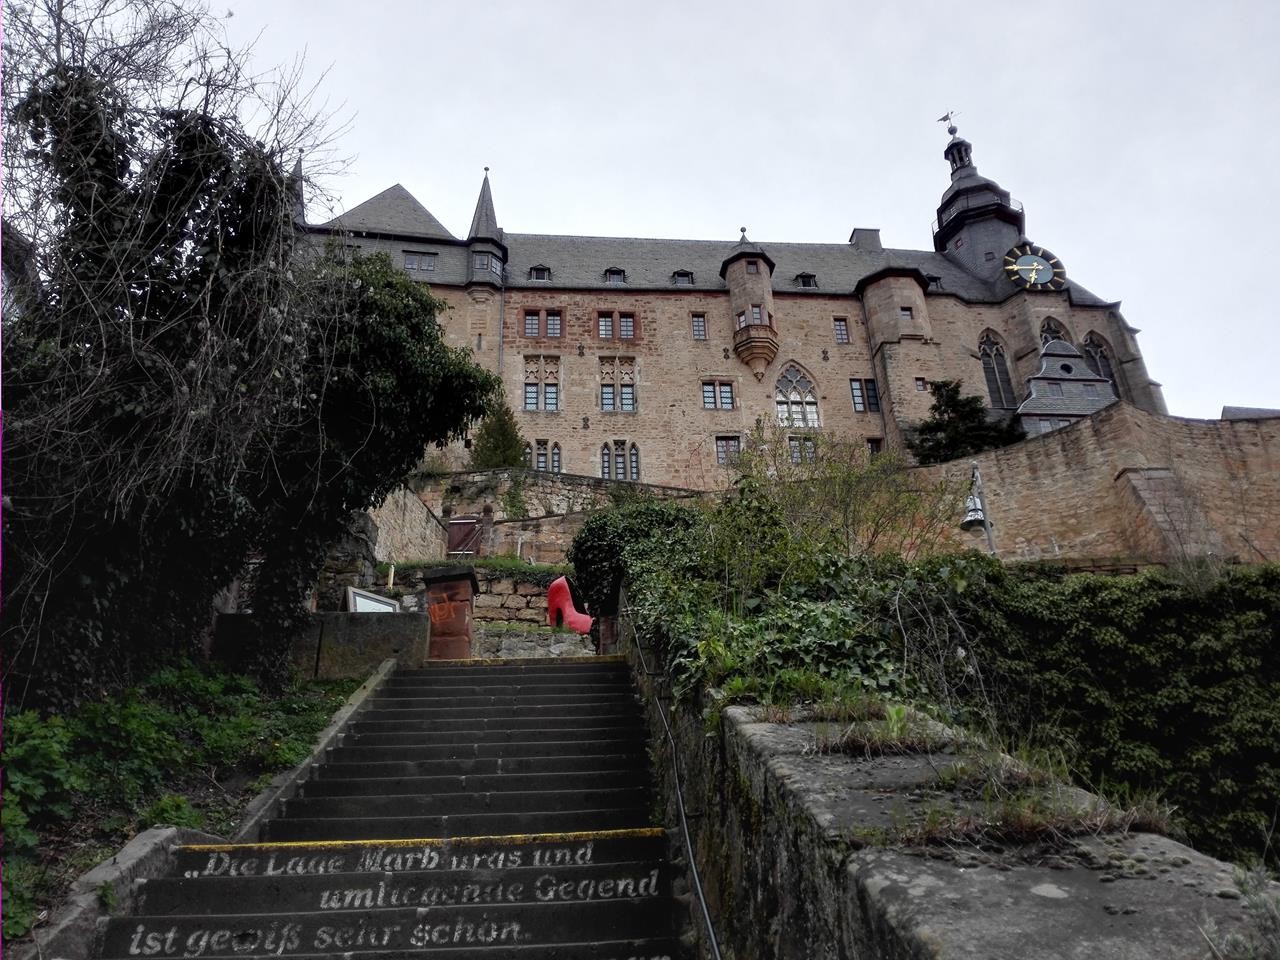 Der Weg hinauf zum Landgrafenschloss führt über viele Stufen